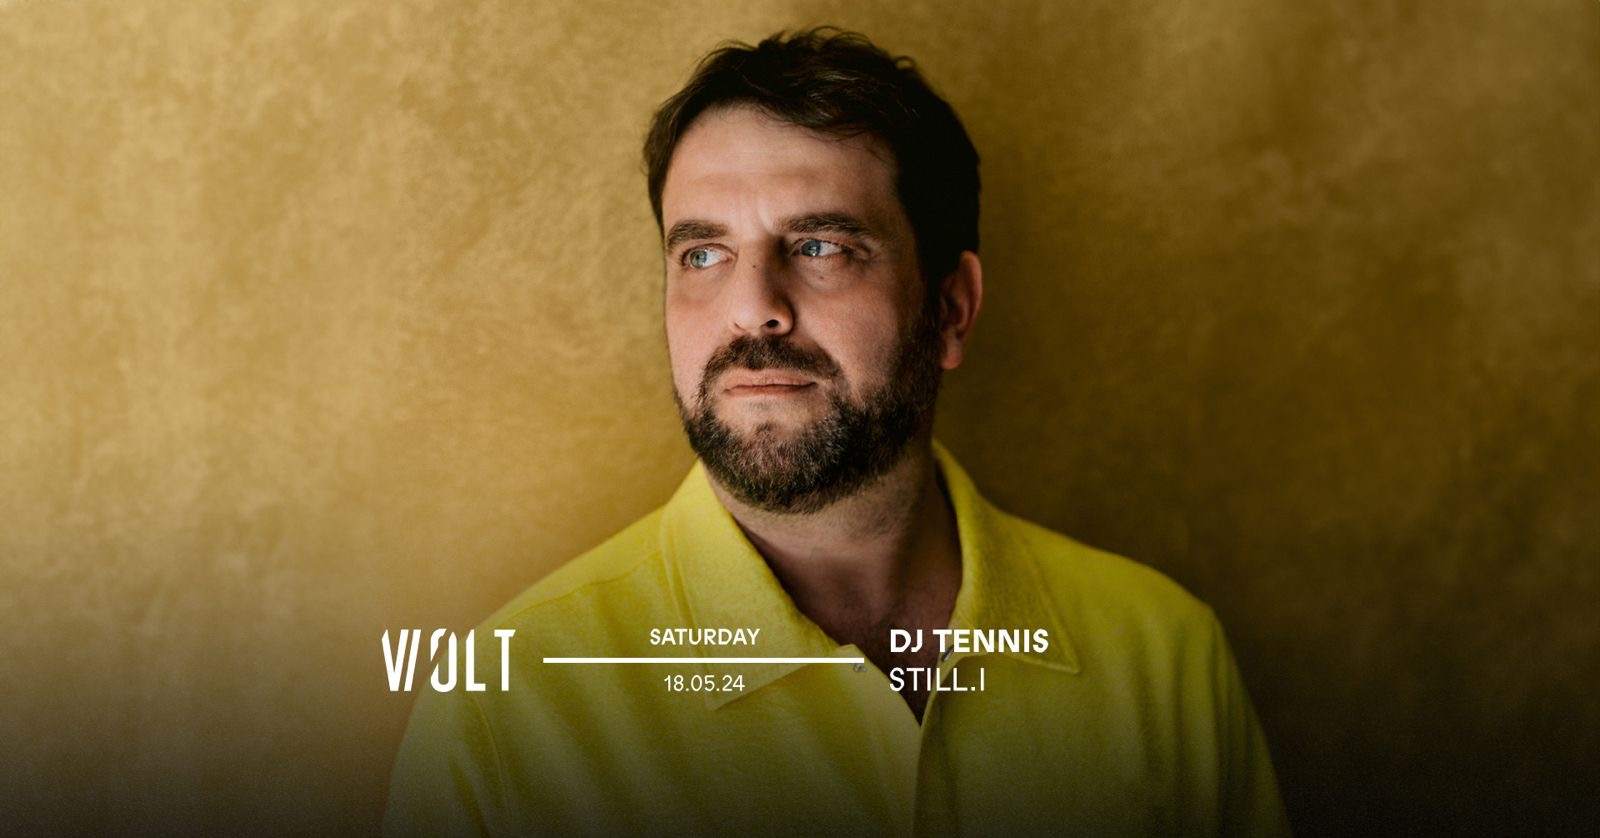 DJ Tennis + Still.i - フライヤー表